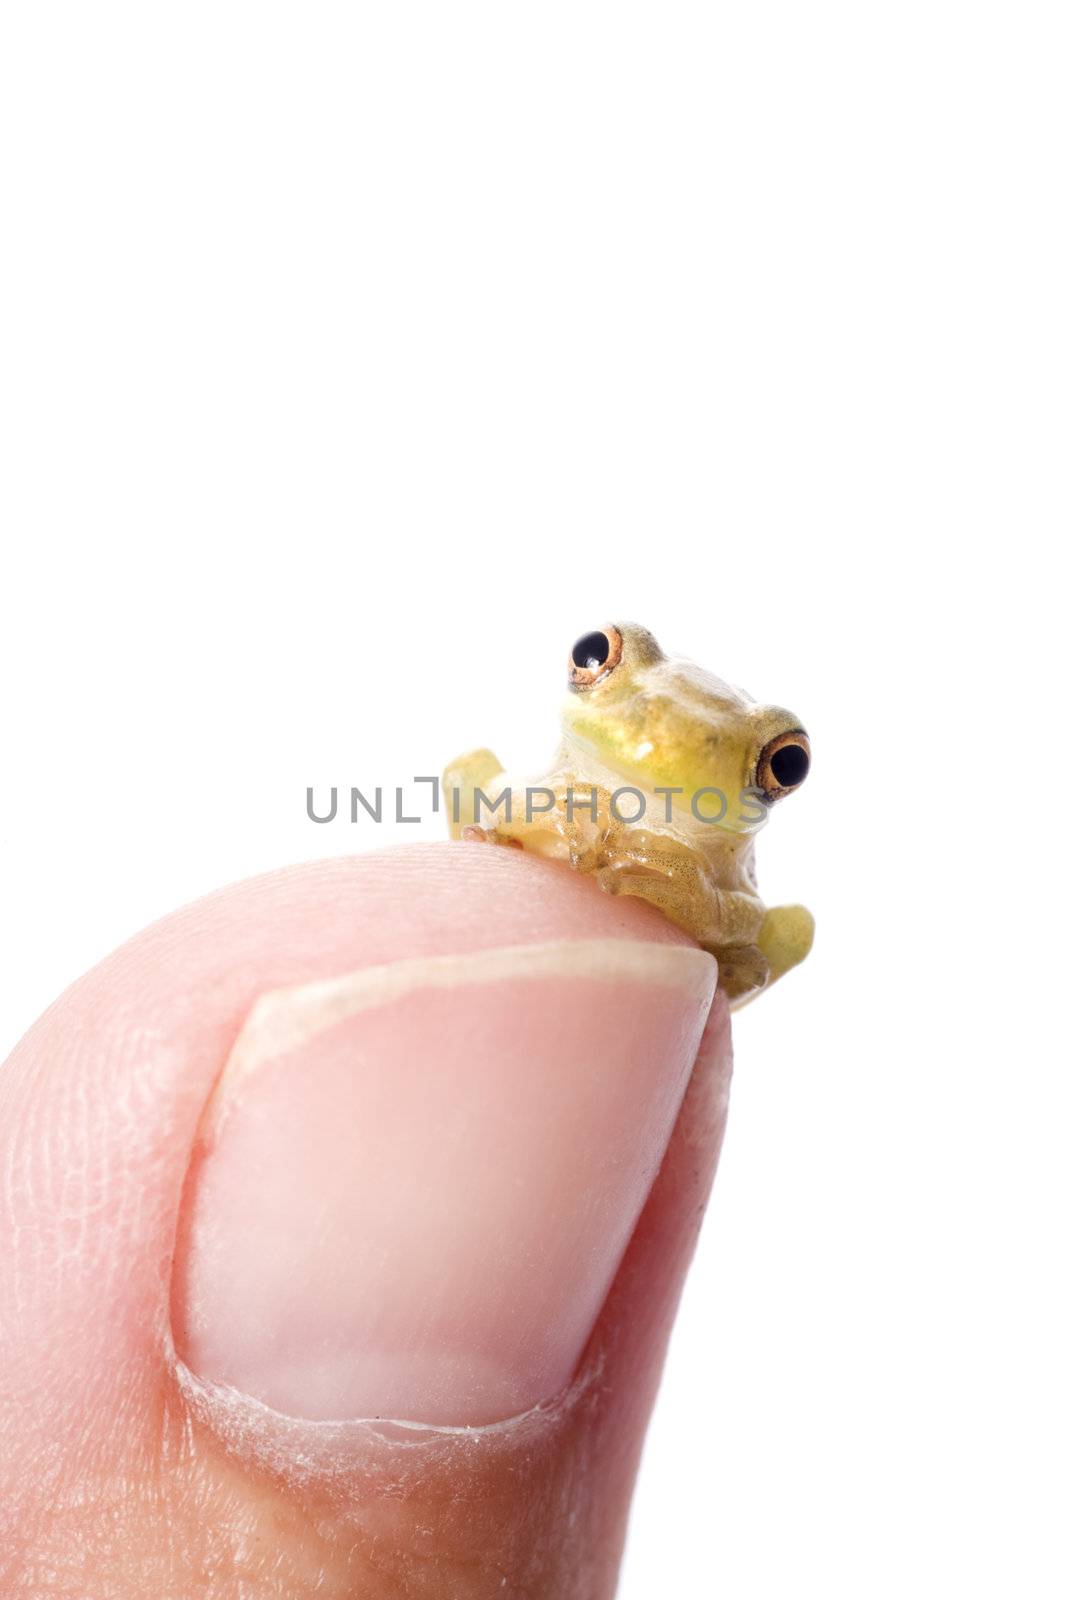 Frog Plotting World Domination by Naluphoto